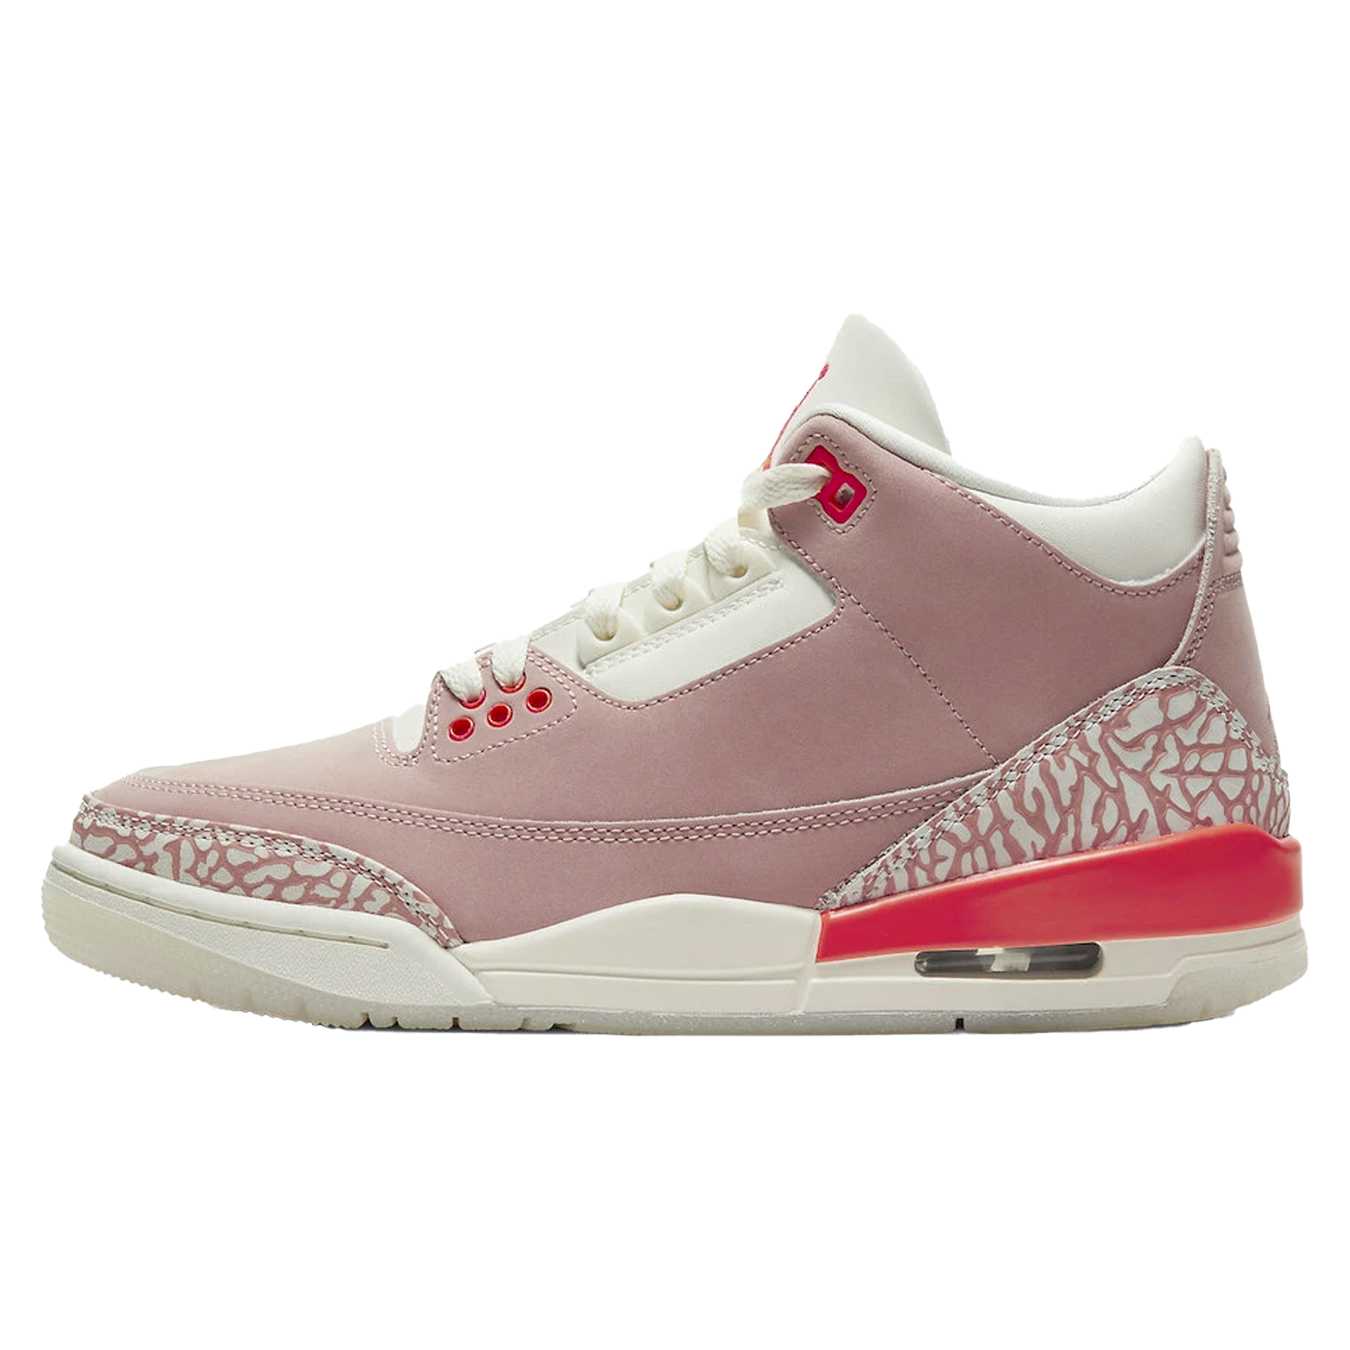 Air Jordan 3  “Rust Pink”